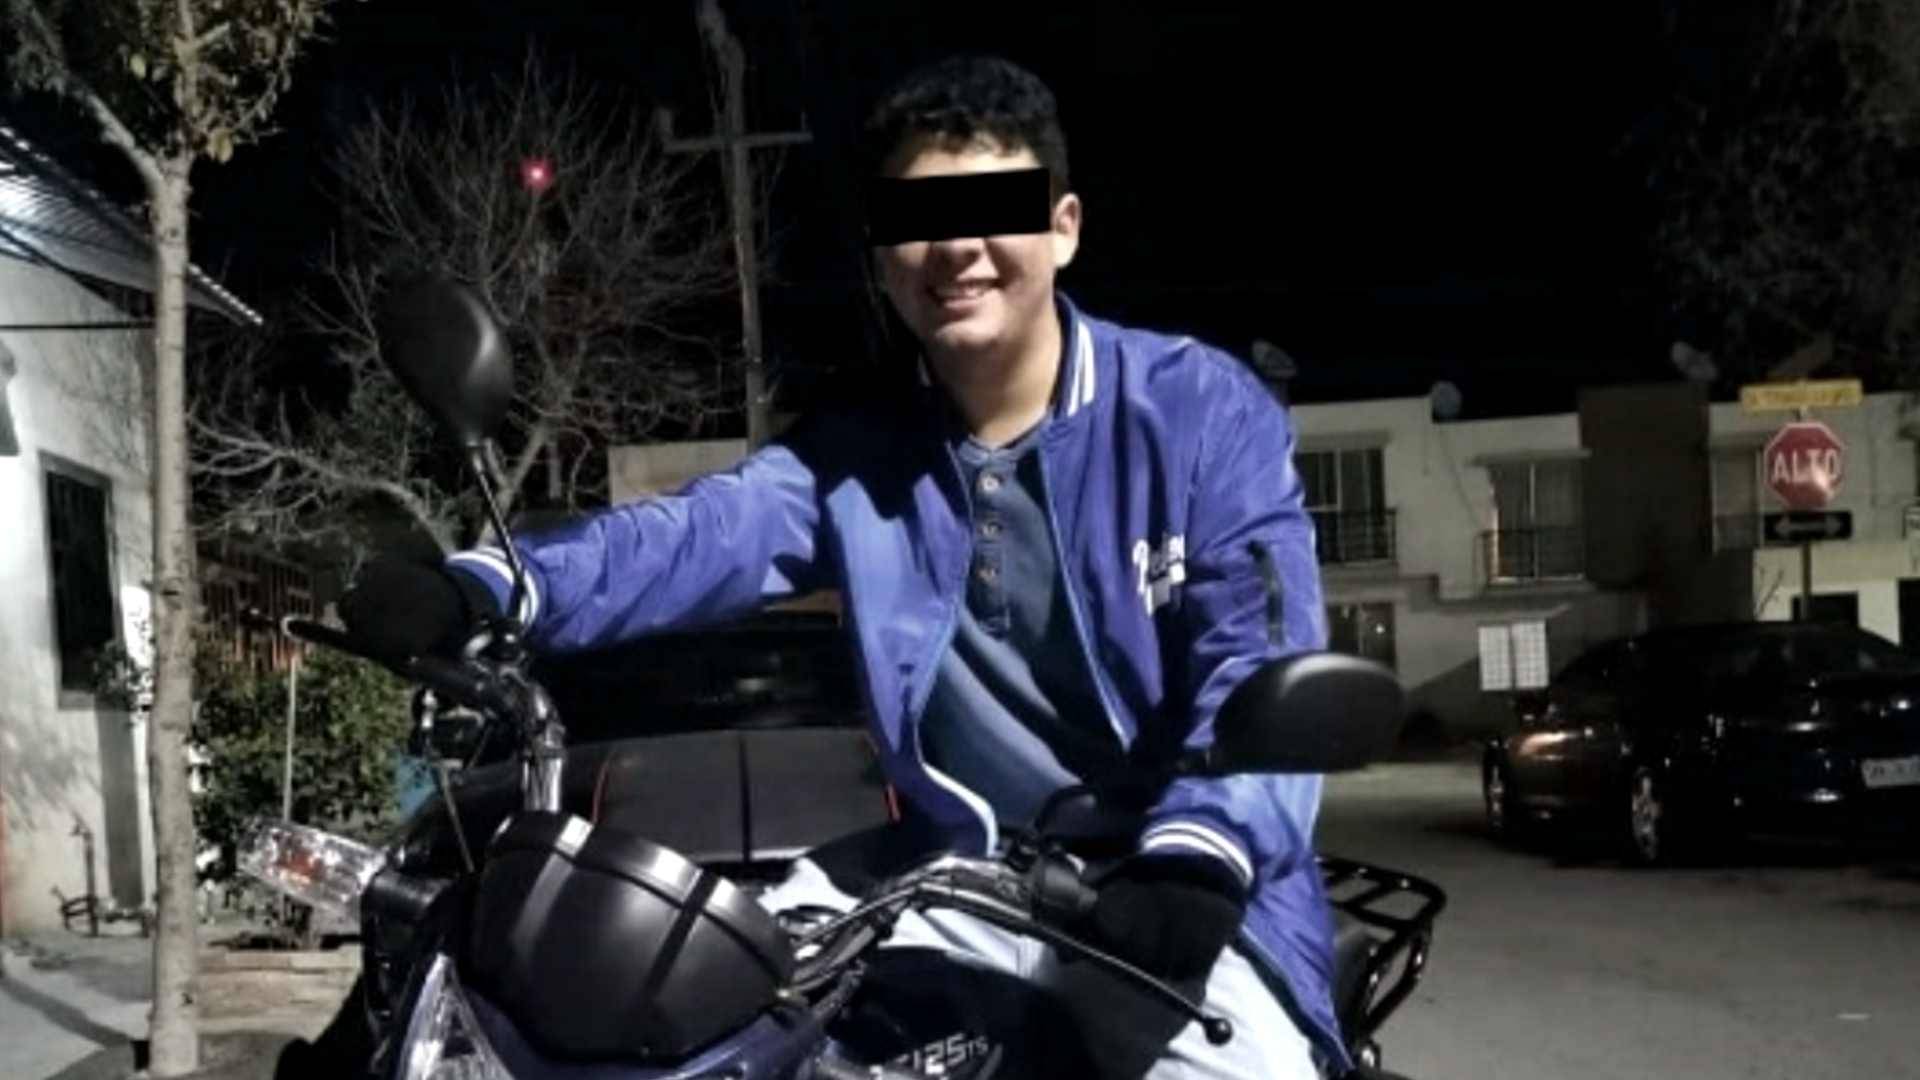 Oliver 'N' trató de huir en su moto tras asesinar a su novia